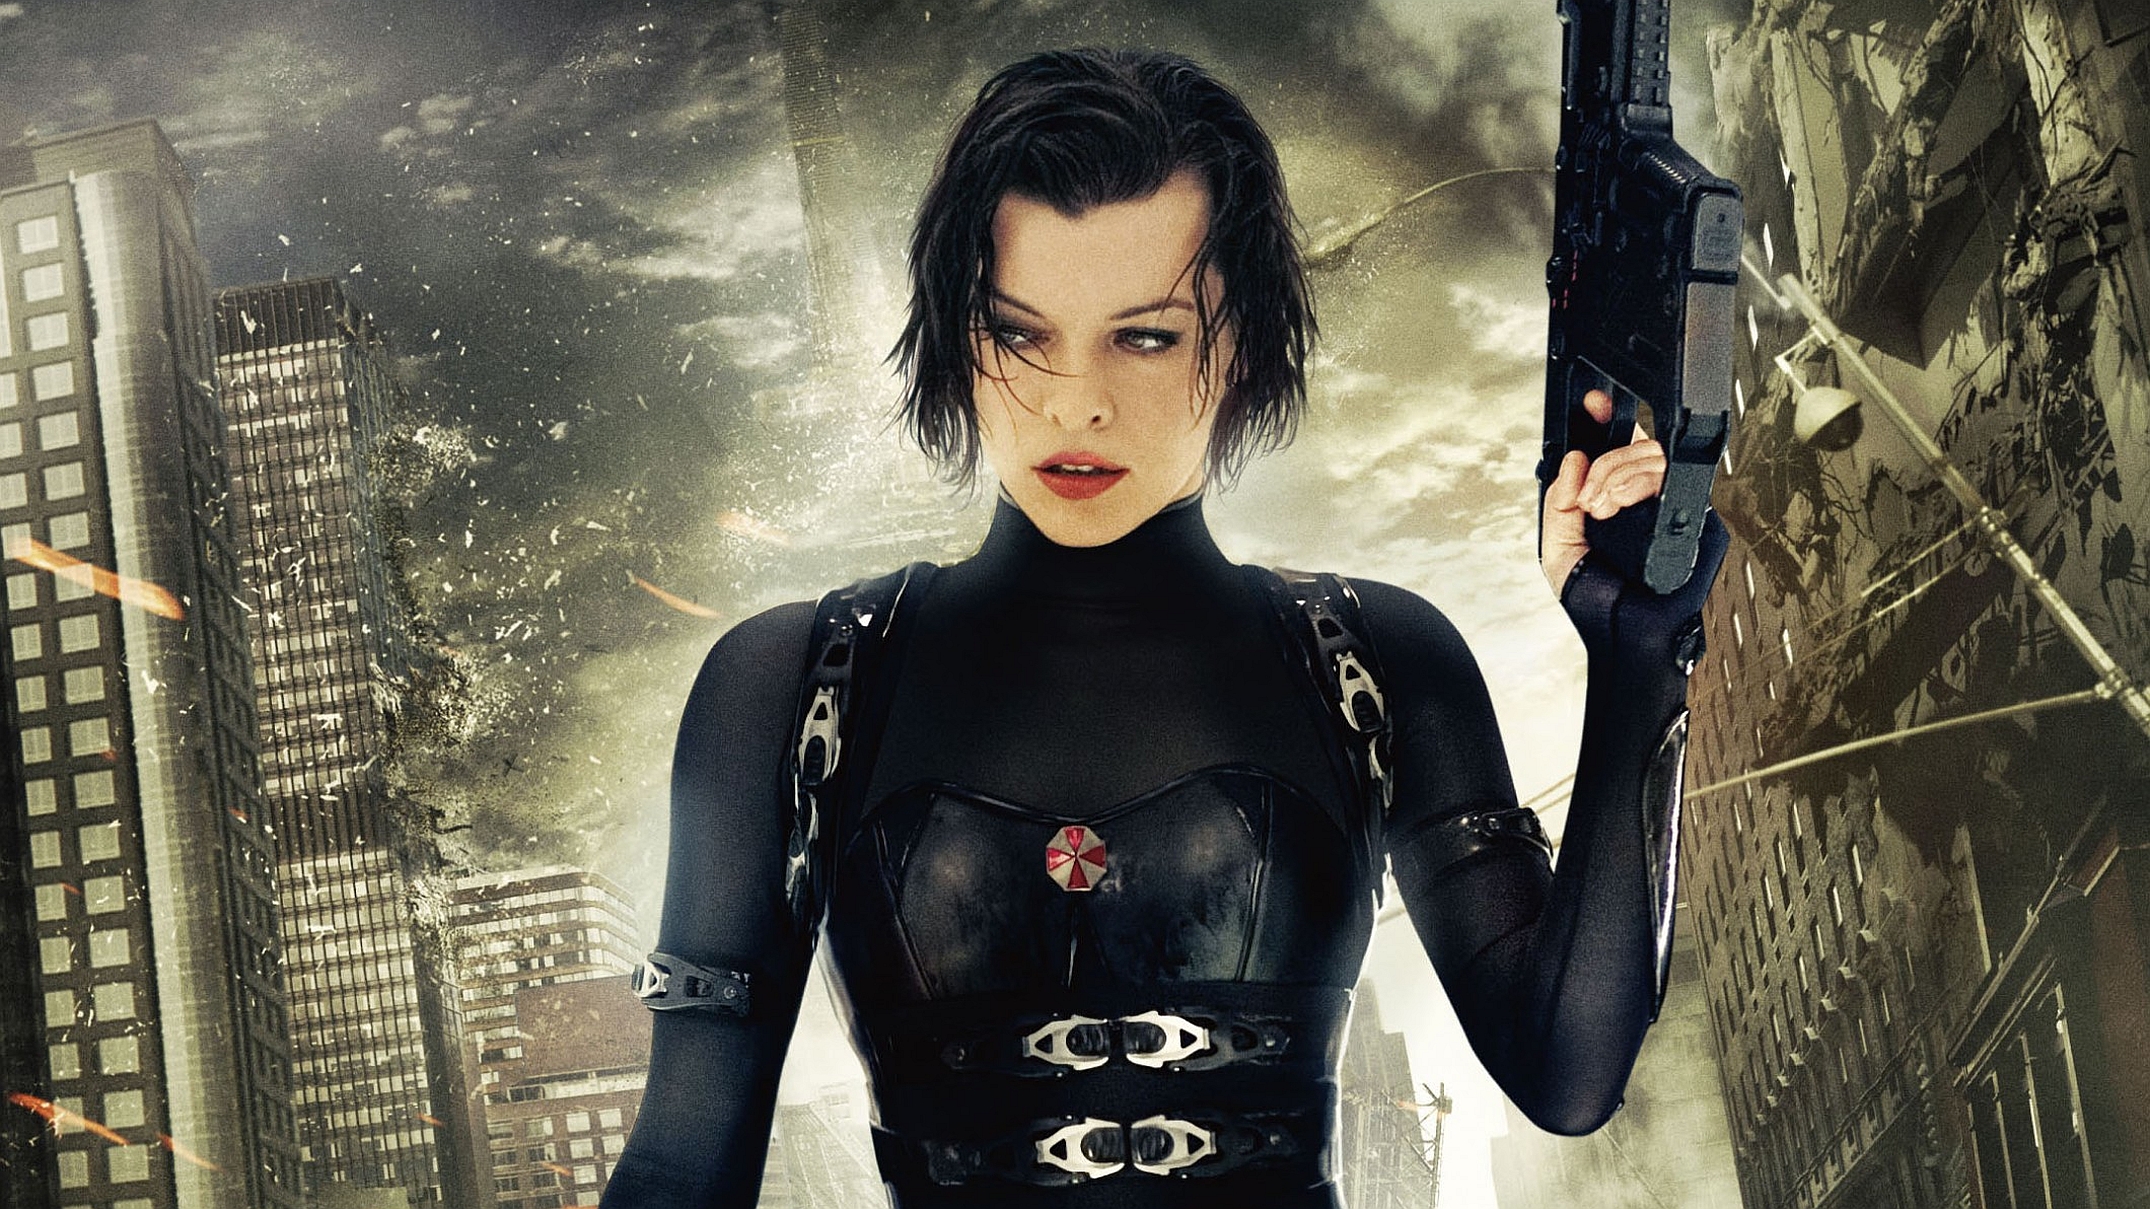 Download mobile wallpaper Resident Evil: Retribution, Resident Evil, Movie for free.